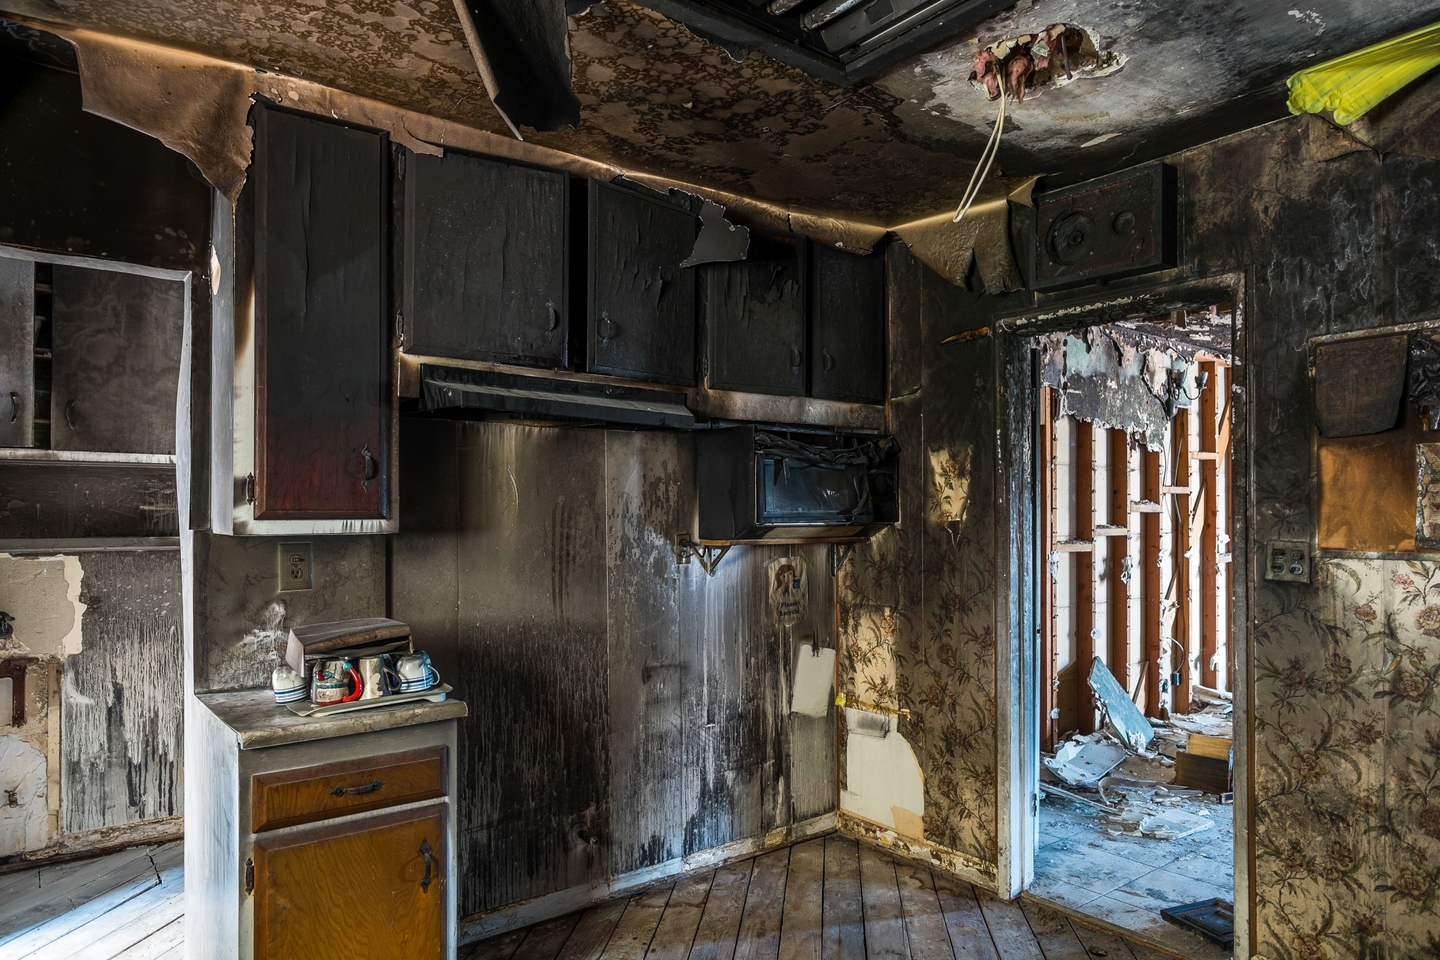 fire damage restoration in kitchen